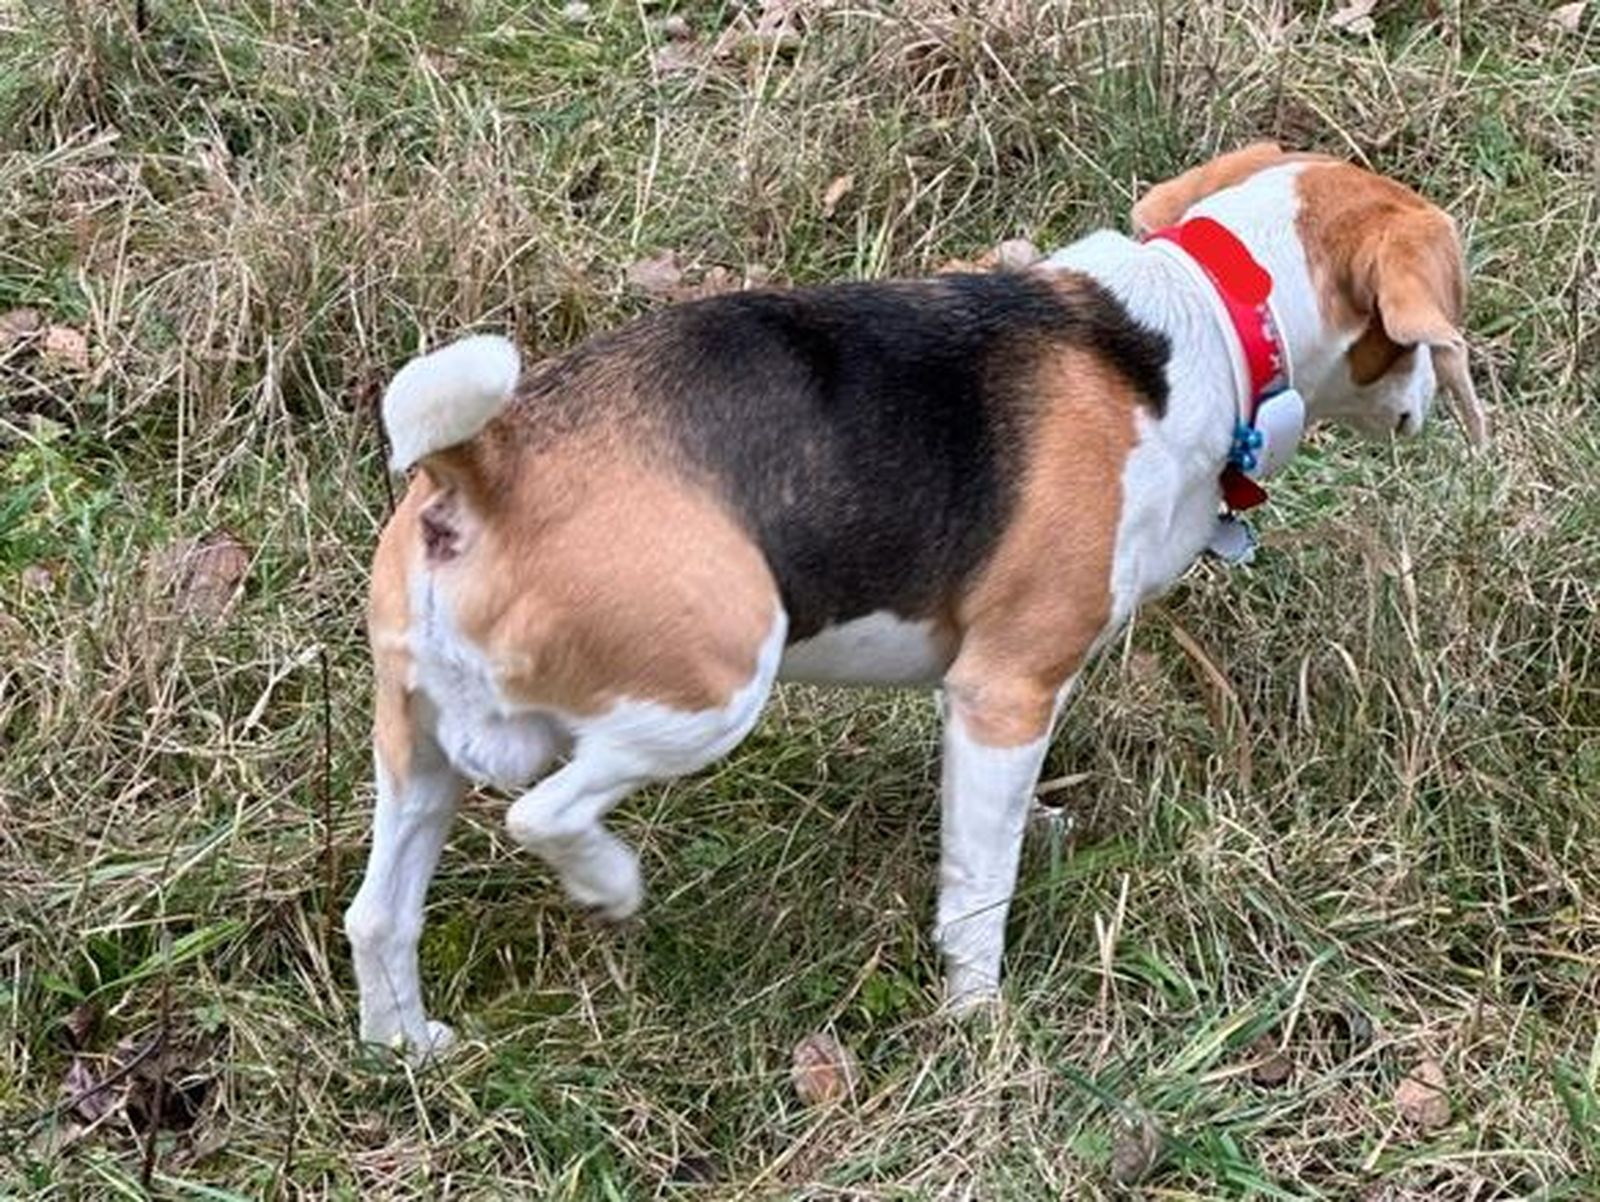 Ein Beagle mit gehobenen rechten Hinterlauf und rotem Halsband mit GPS-Tracker steht auf der Wiese